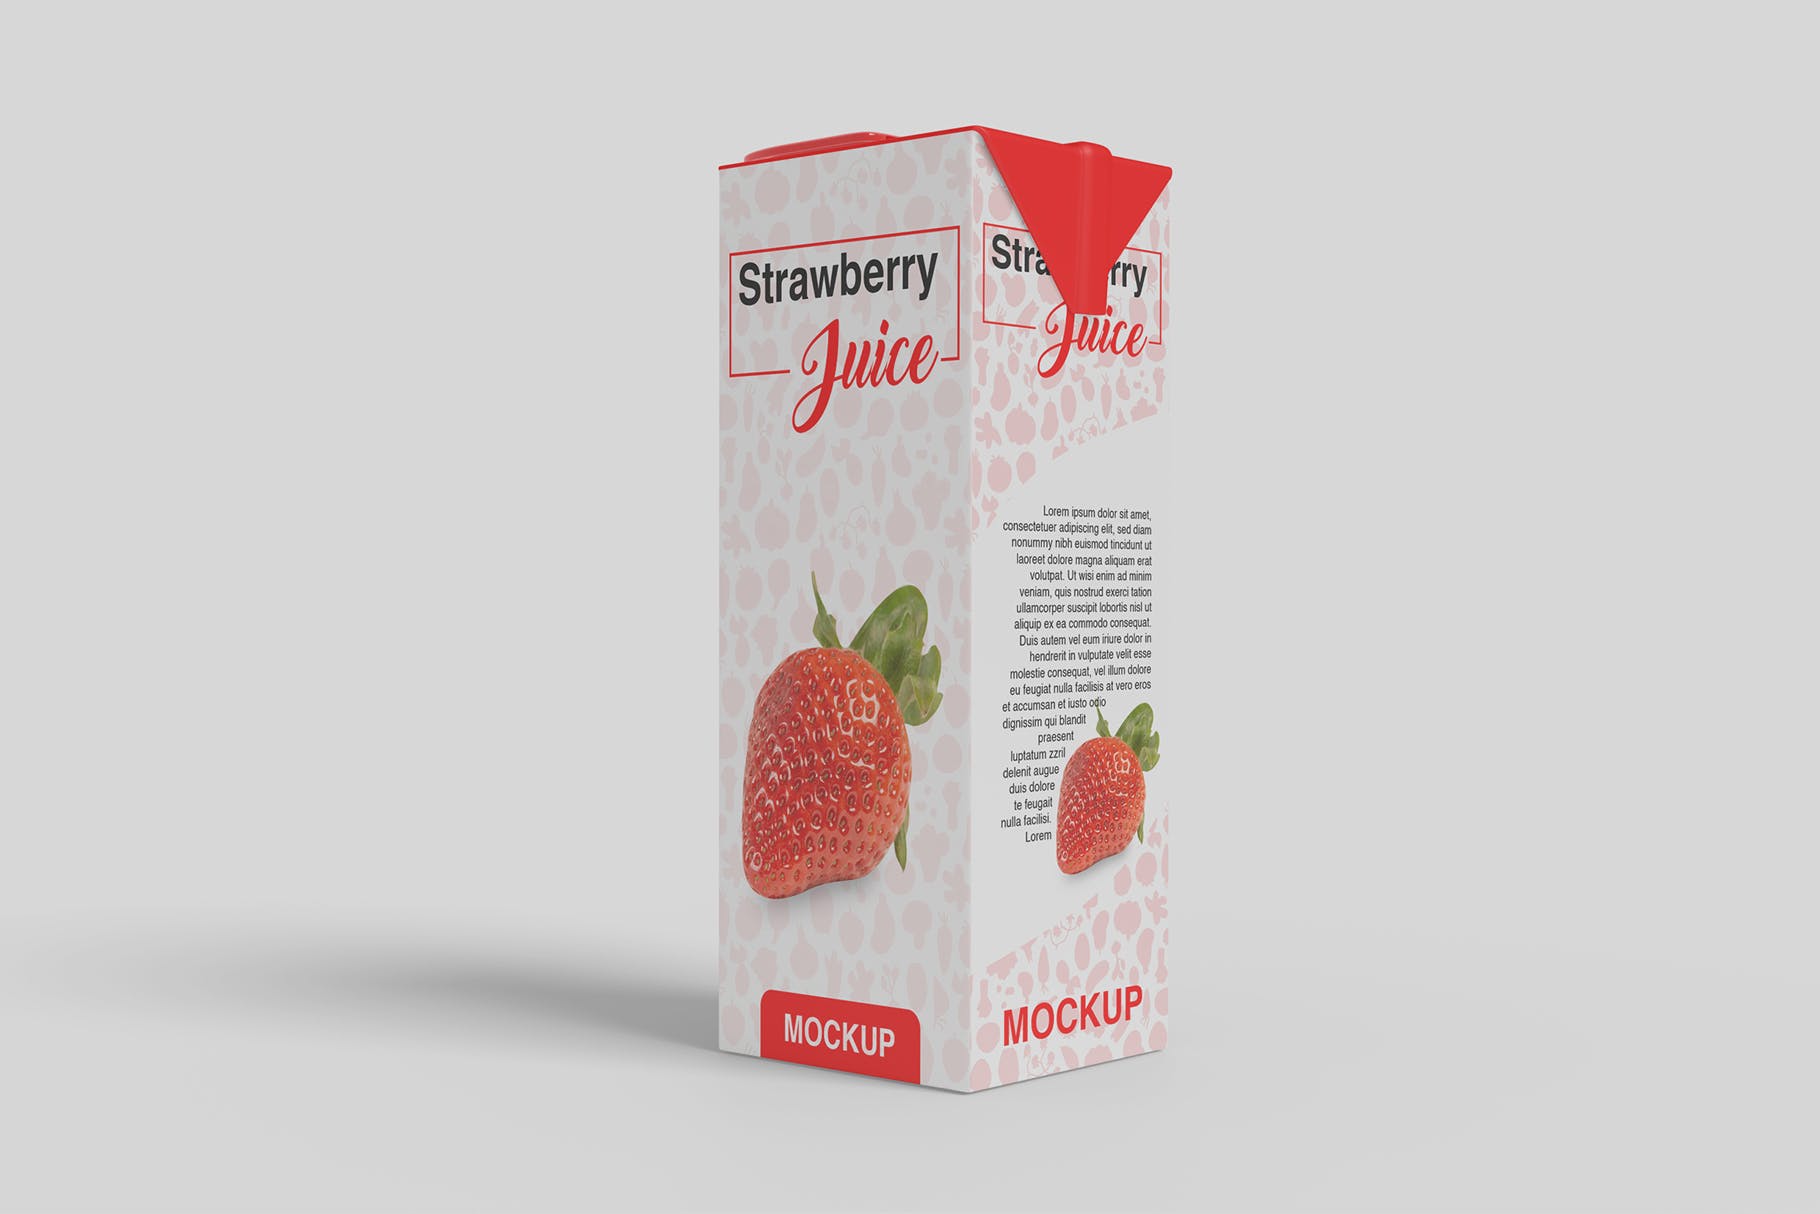 果汁盒包装外观设计第一素材精选模板 Juice Box Mockup插图(2)